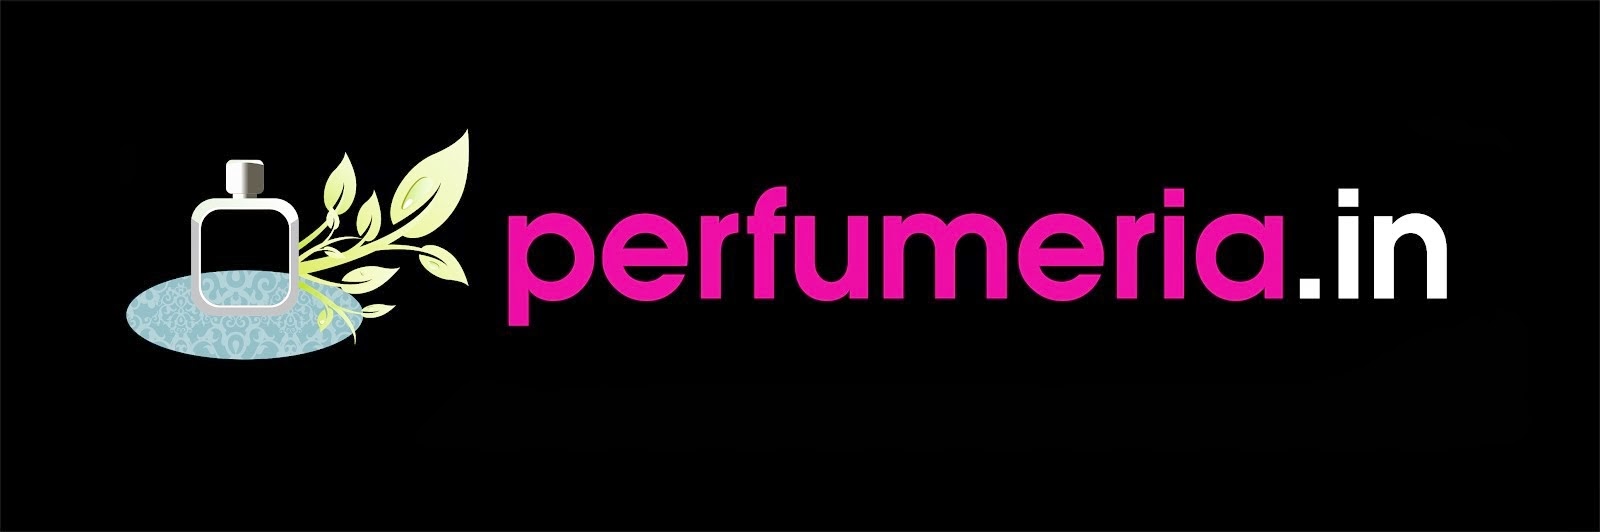 Perfumeria.in